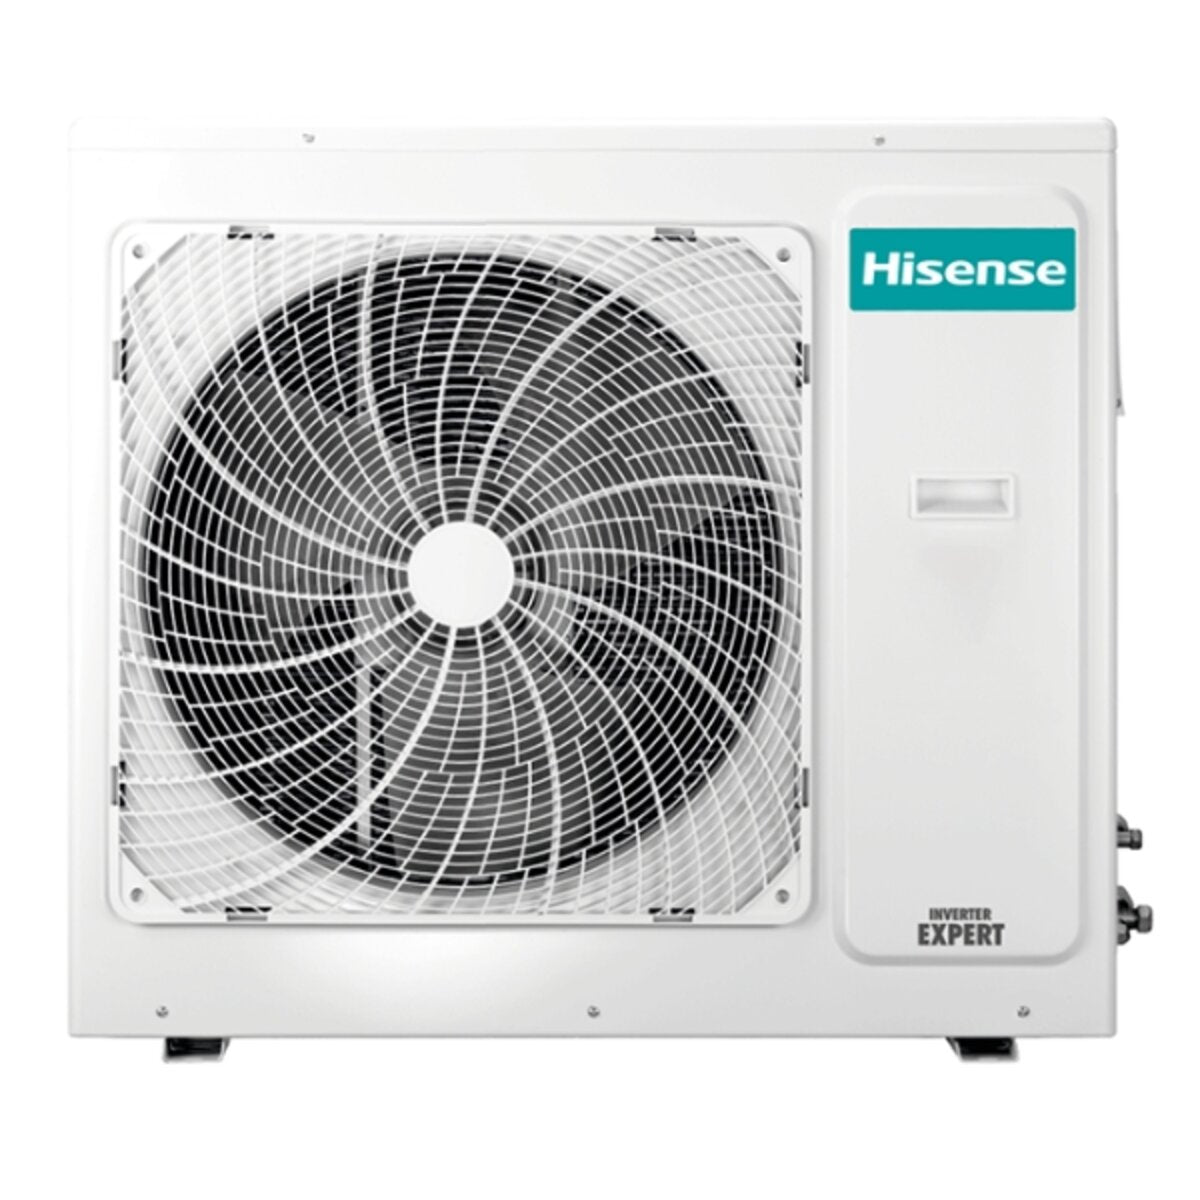 Hisense Hi-Comfort Quadri Split Klimaanlage 9000+9000+12000+12000 BTU Wechselrichter A++ WLAN Außengerät 10,0 kW